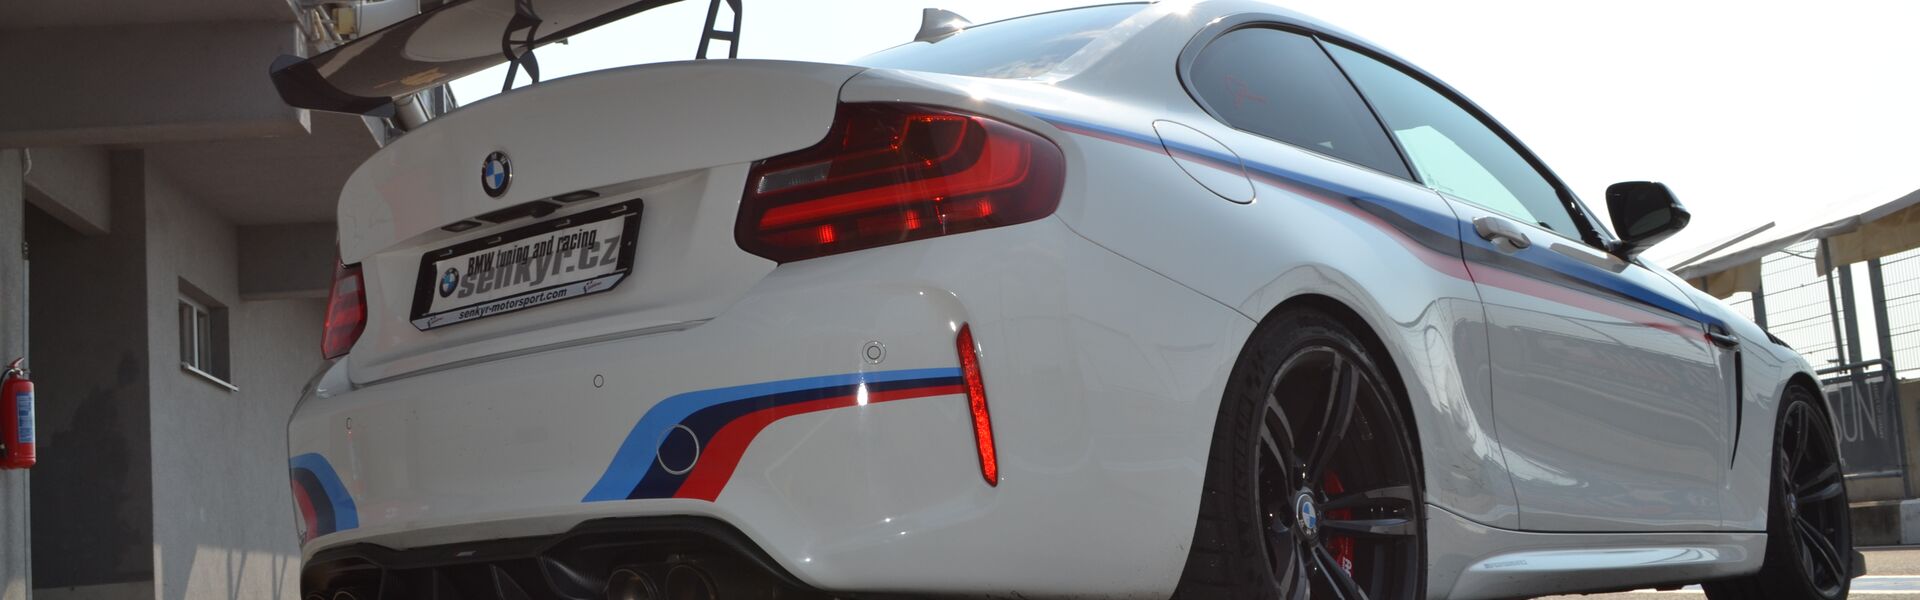 Bodykit/ Aerodynamické prvky pro automobil BMW X6M F86